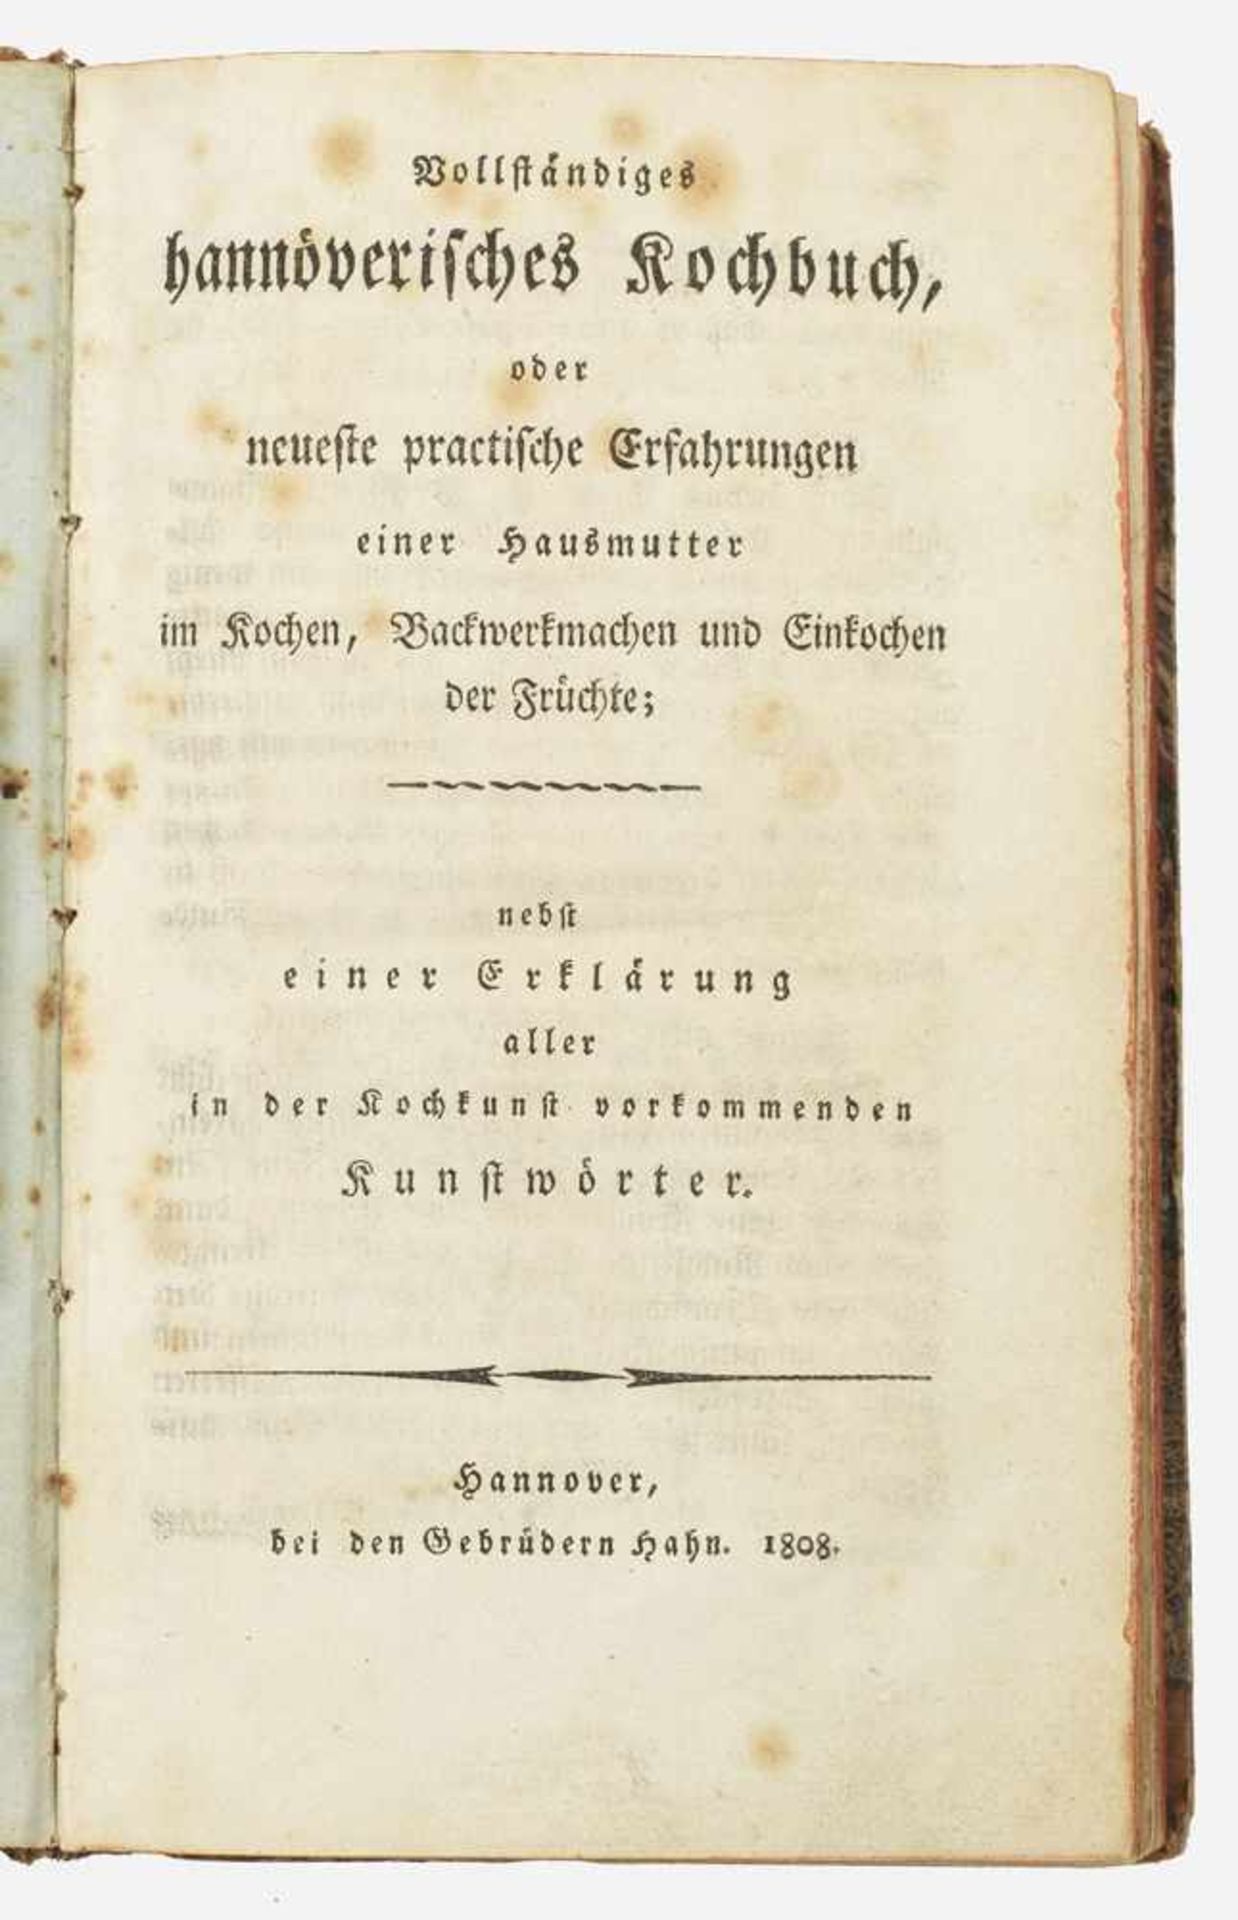 "Vollständiges hannoverisches Kochbuch". Originaltitel"oder neueste practische Erfahrungen einer